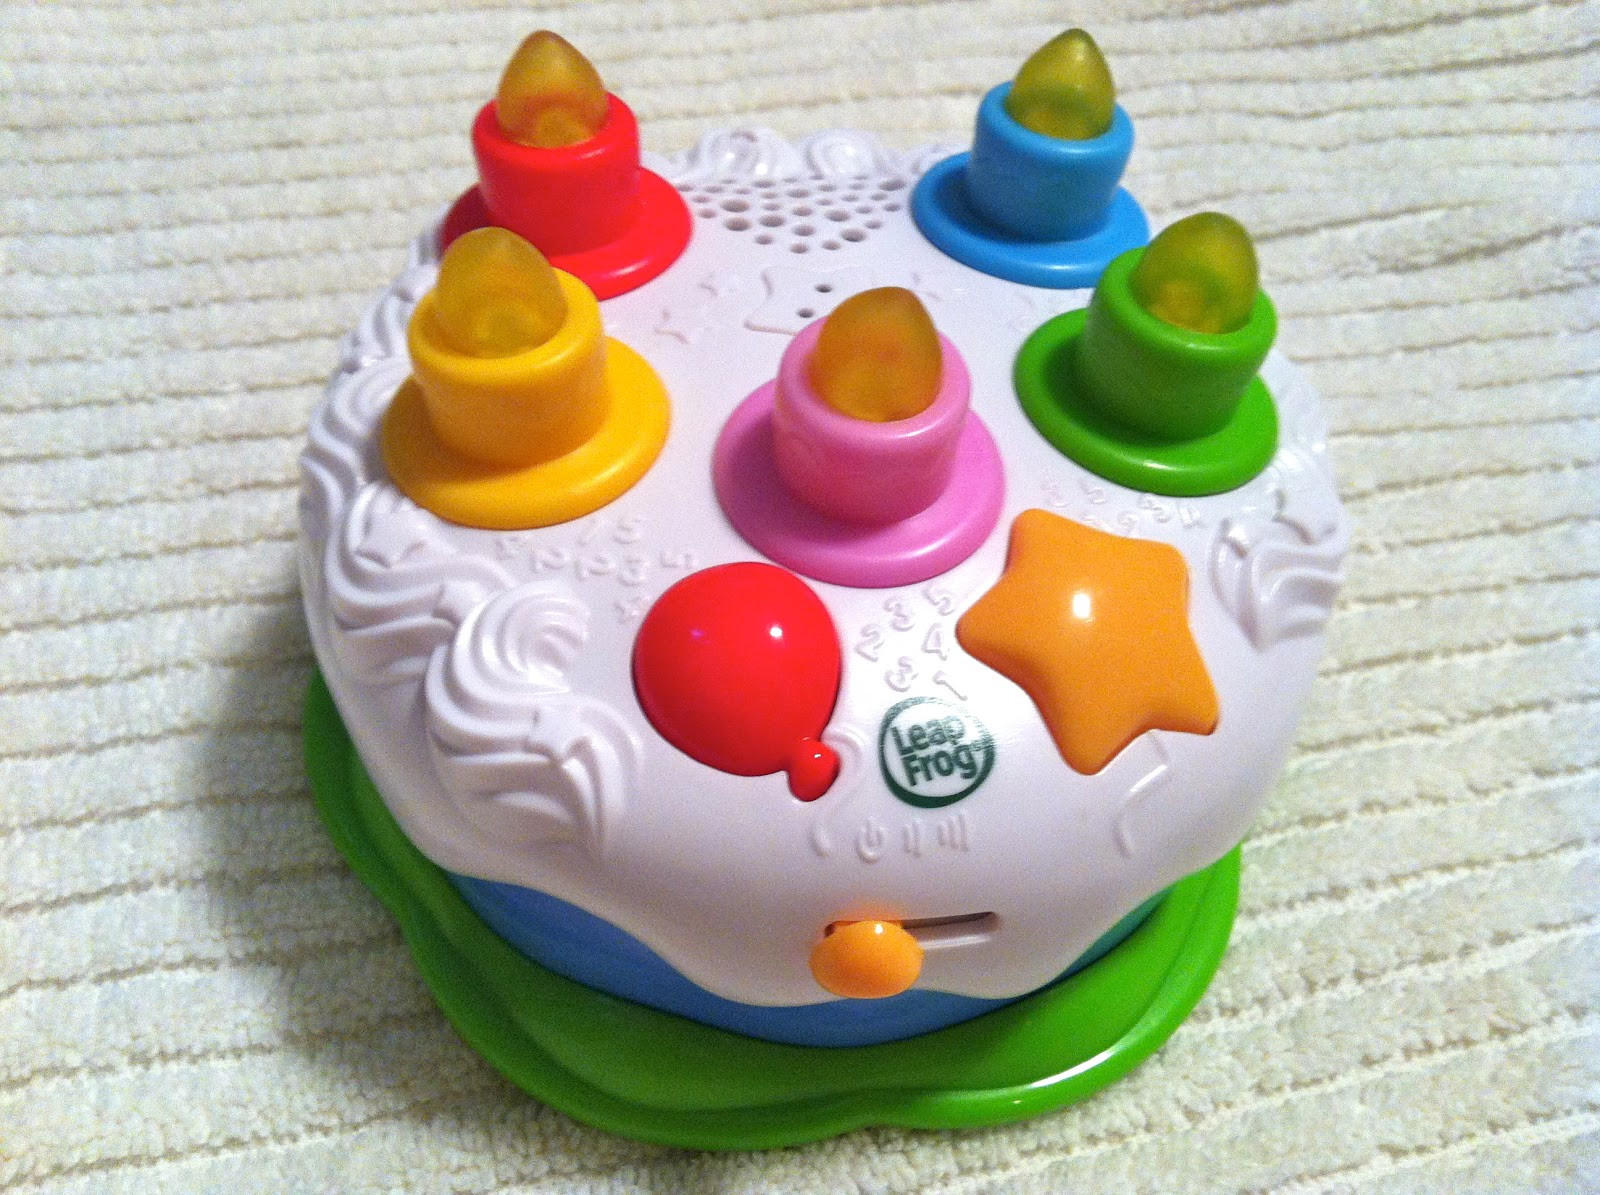 Leapfrog Birthday Cake
 Pin Leapfrog Scout And Friends Baby Walker Cake on Pinterest